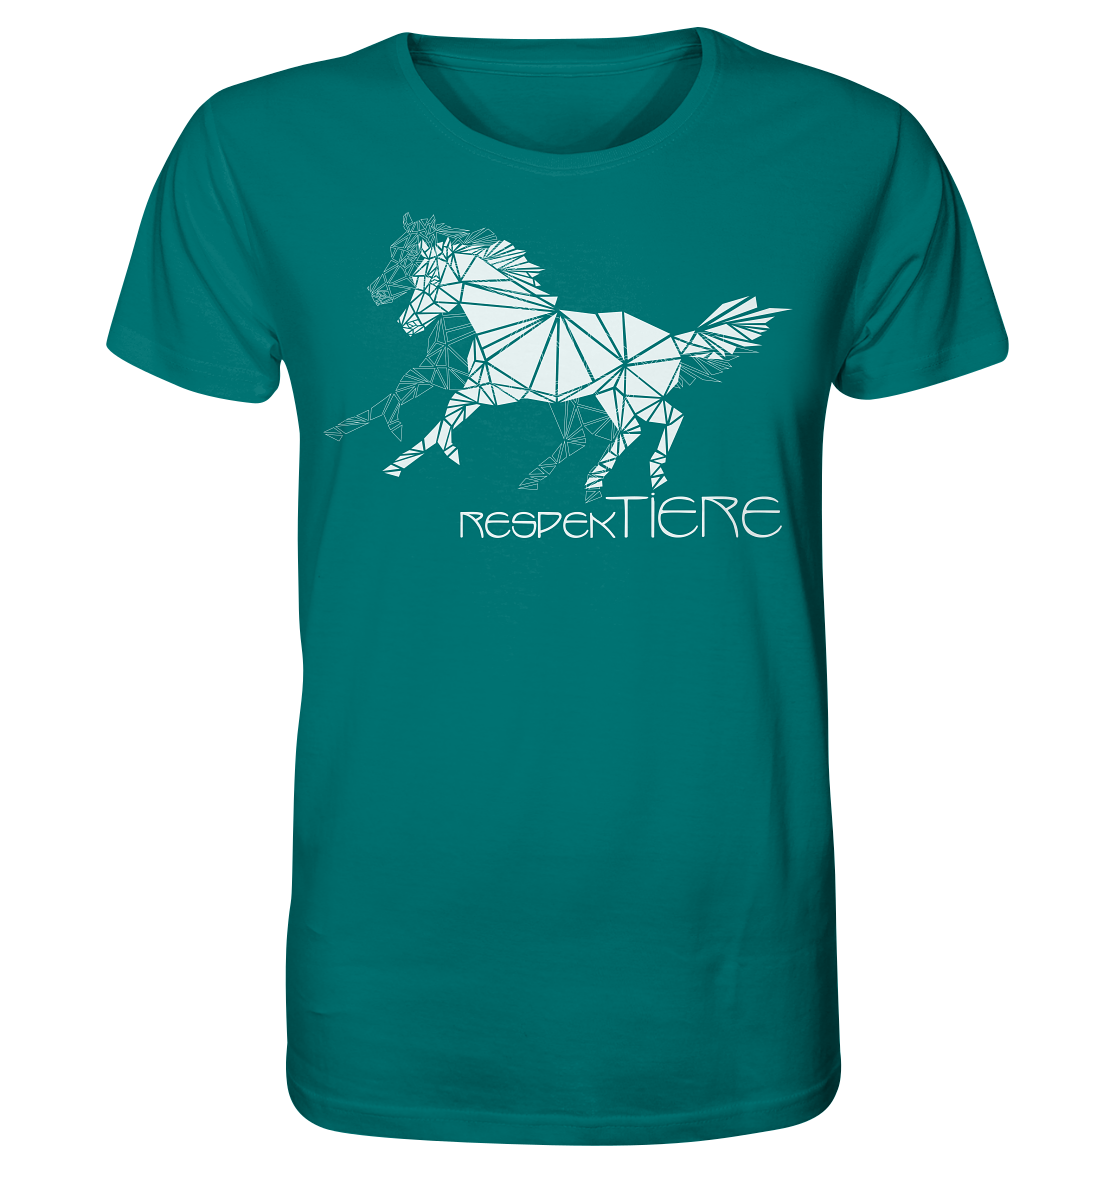 RespekTiere - Organic Shirt